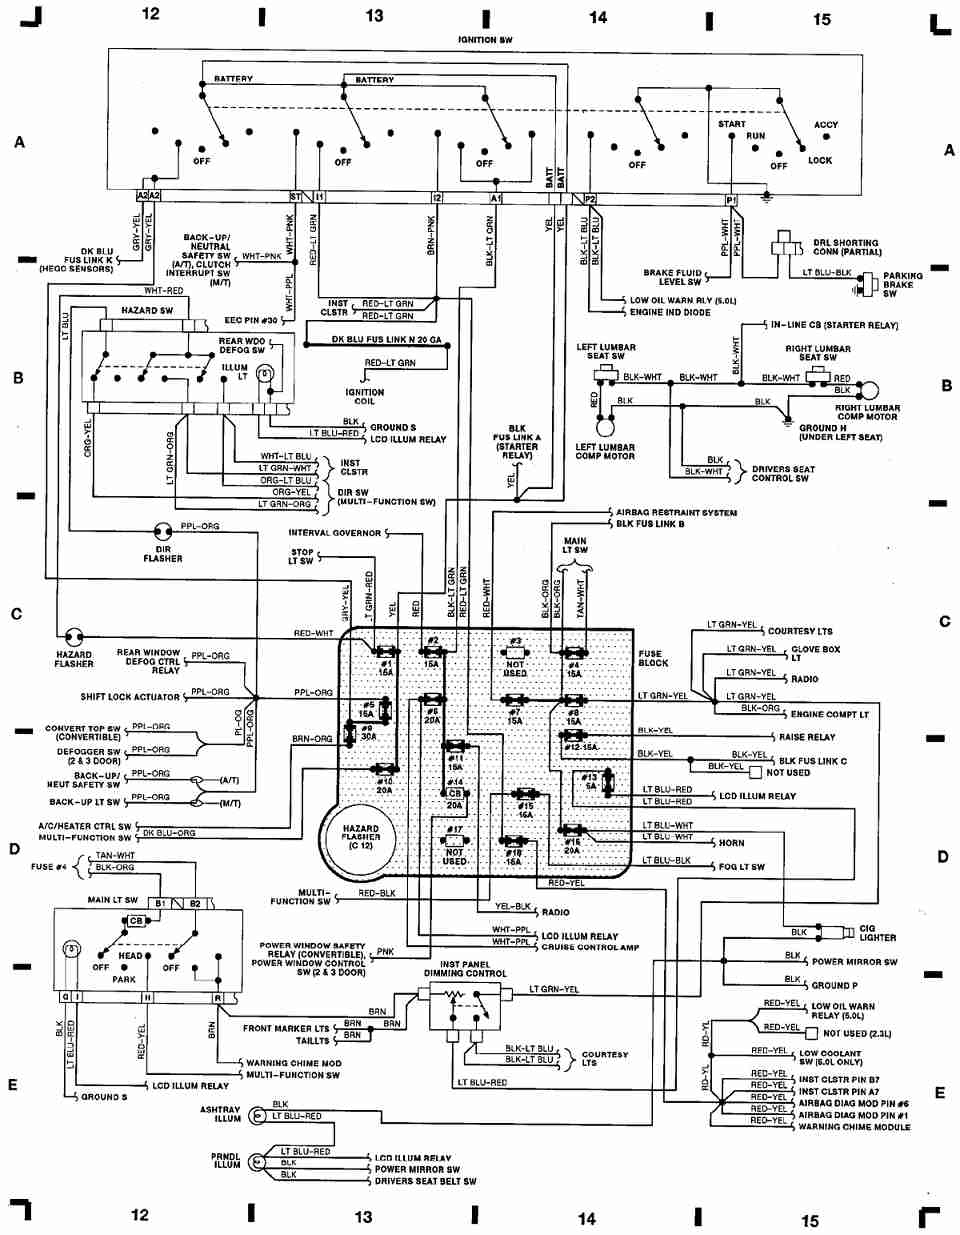 1990 mustang repair manual pdf